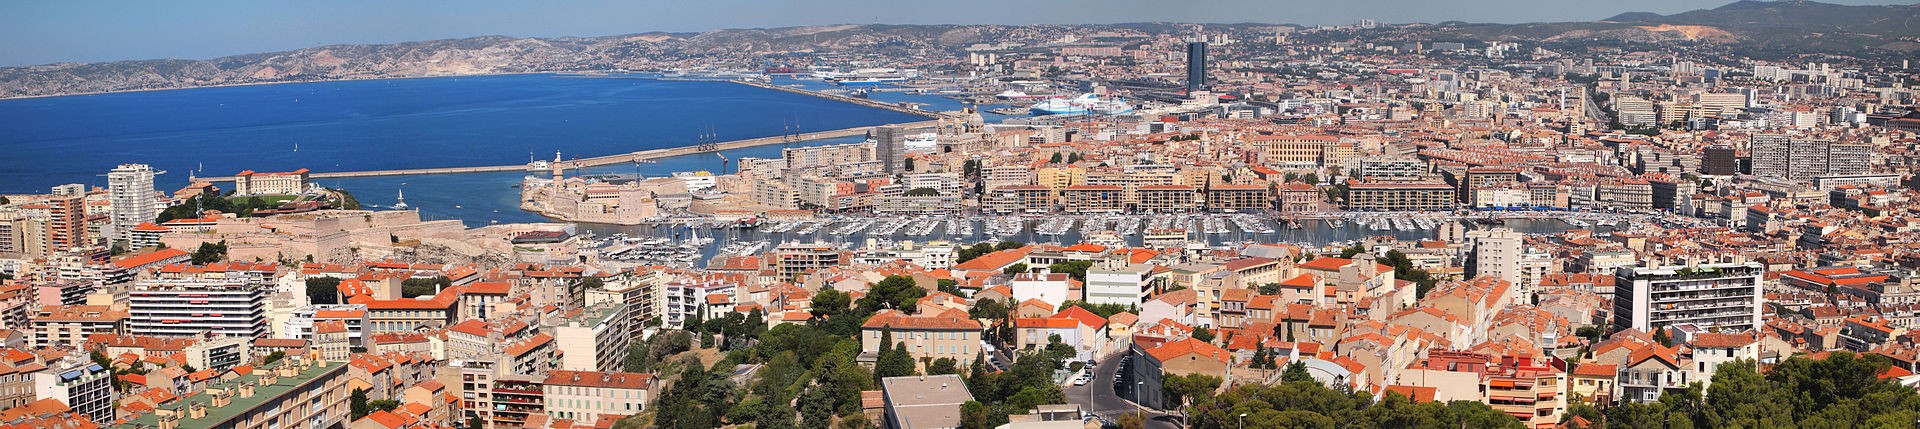 Panorama da região portuária de Marselha, França (Foto: Tiia Monto/Wikipédia)